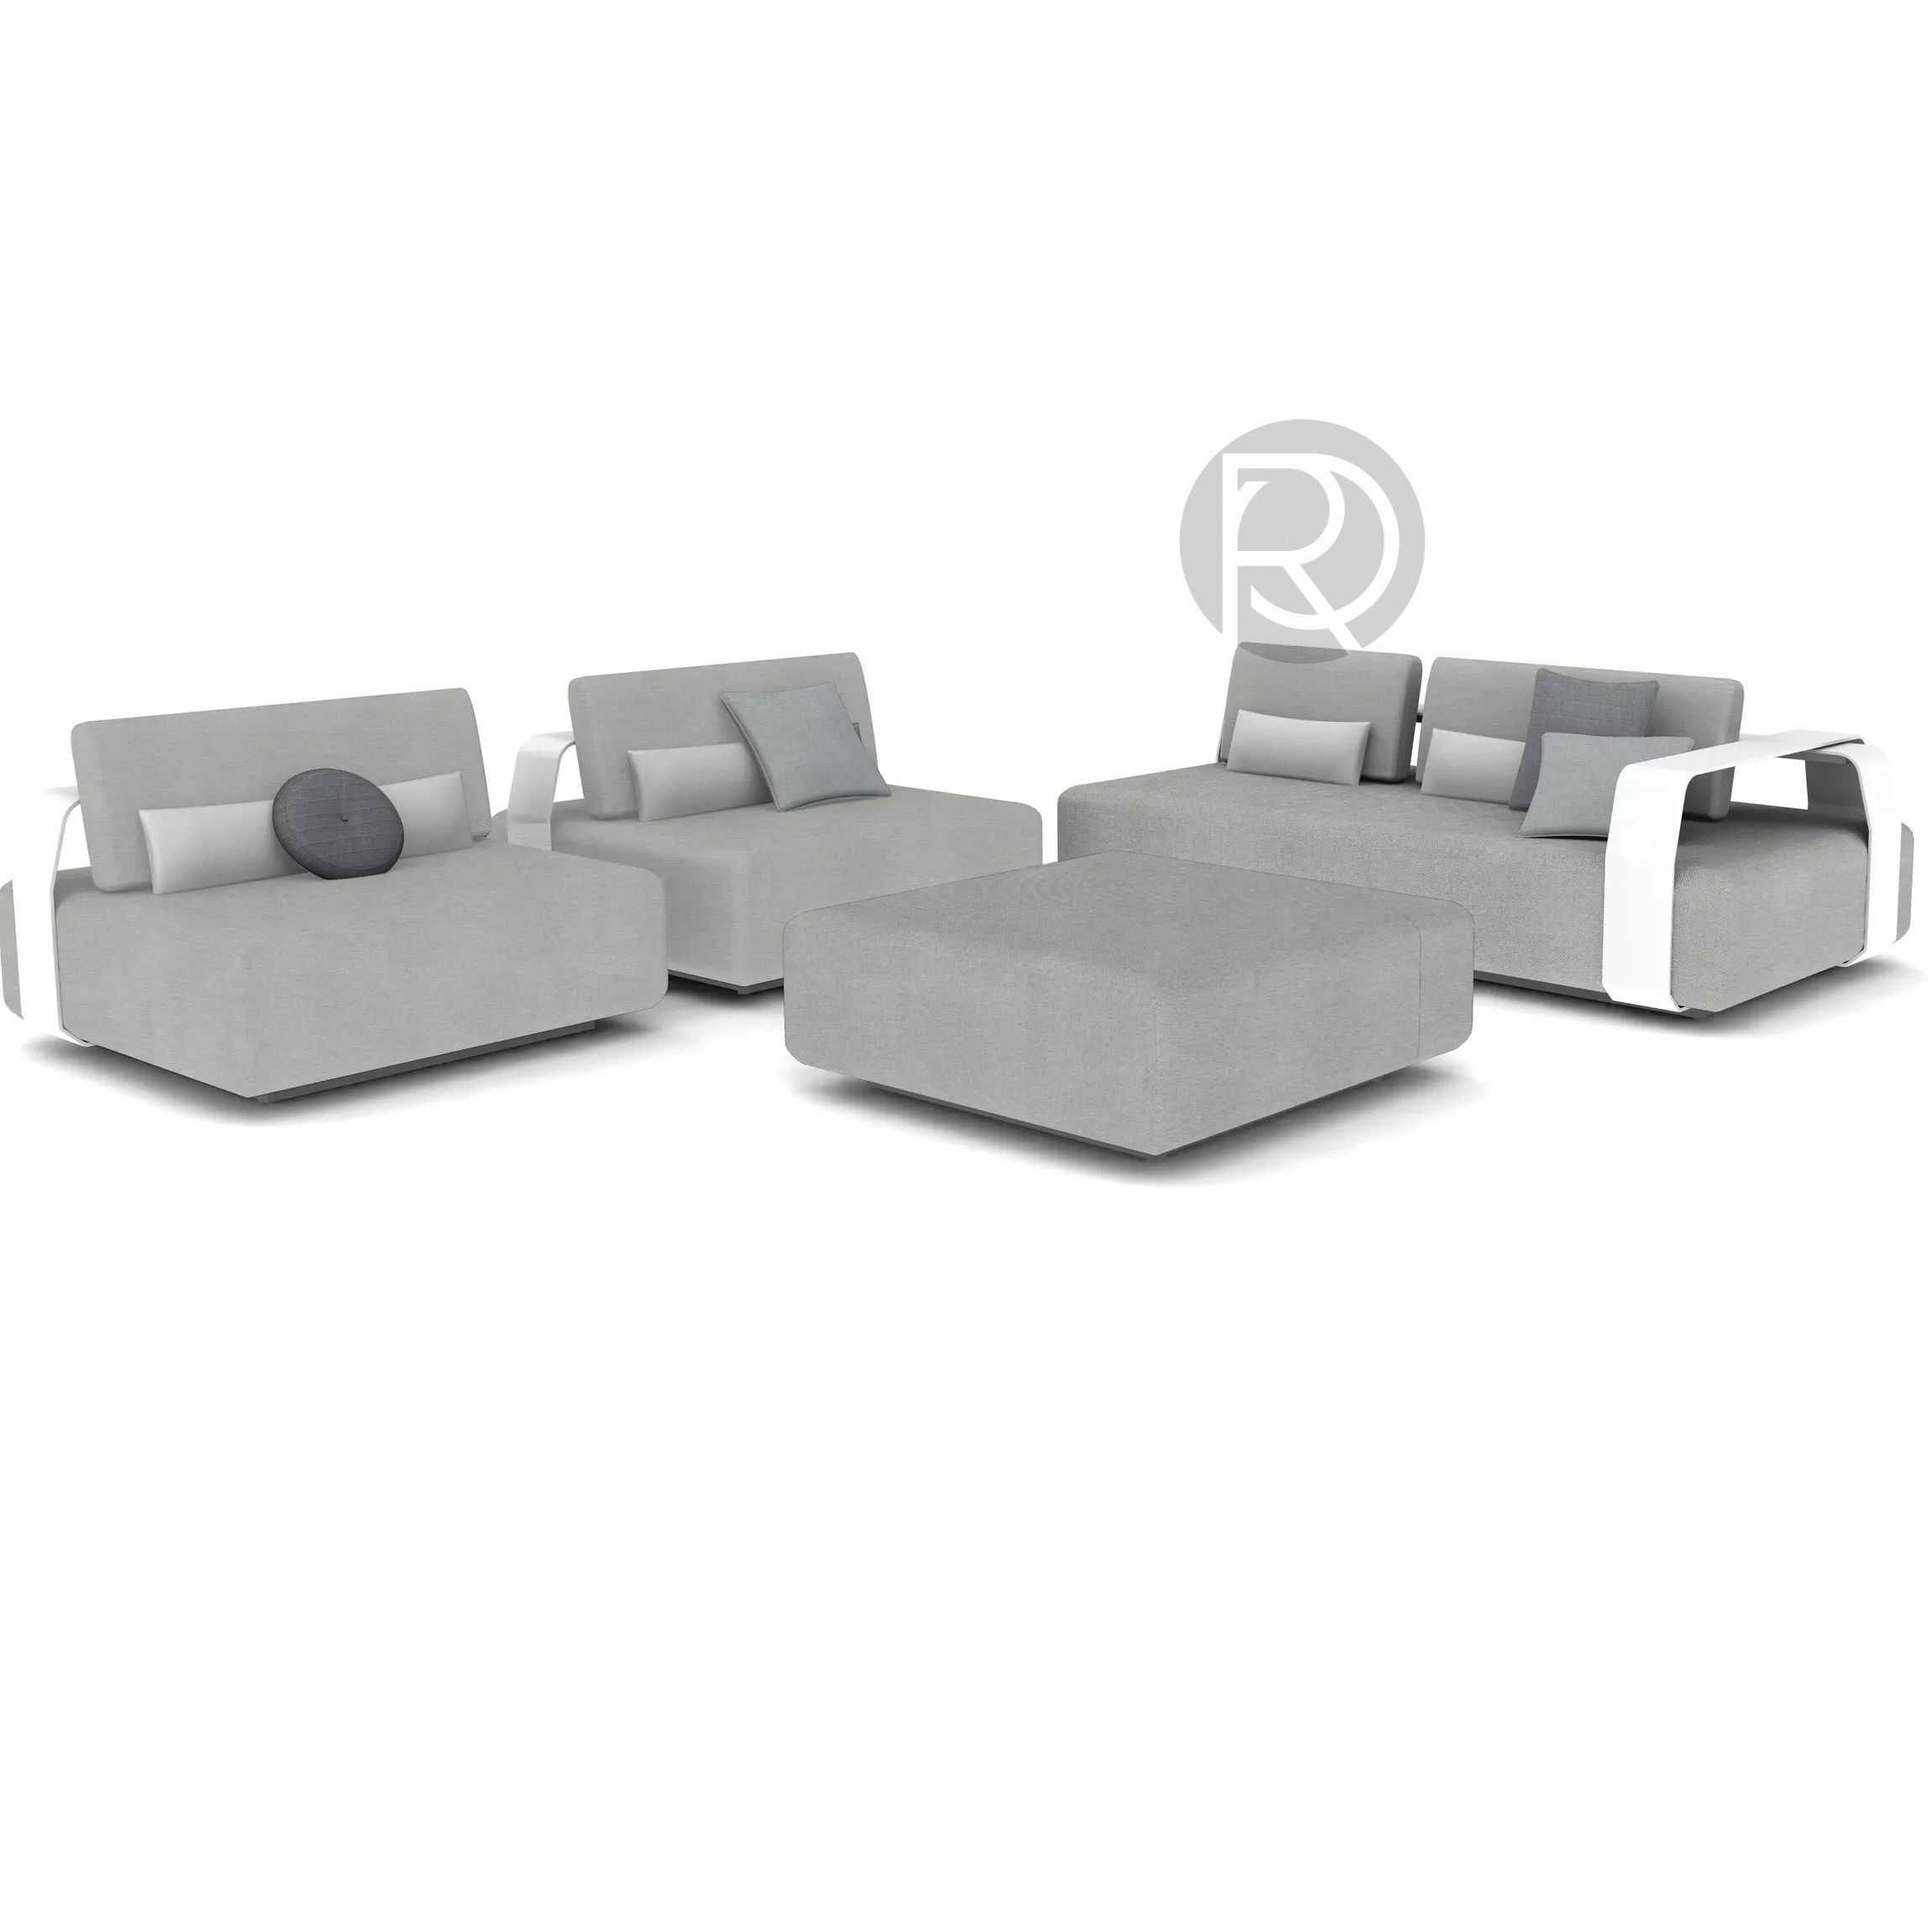 KUMO by Manutti furniture set